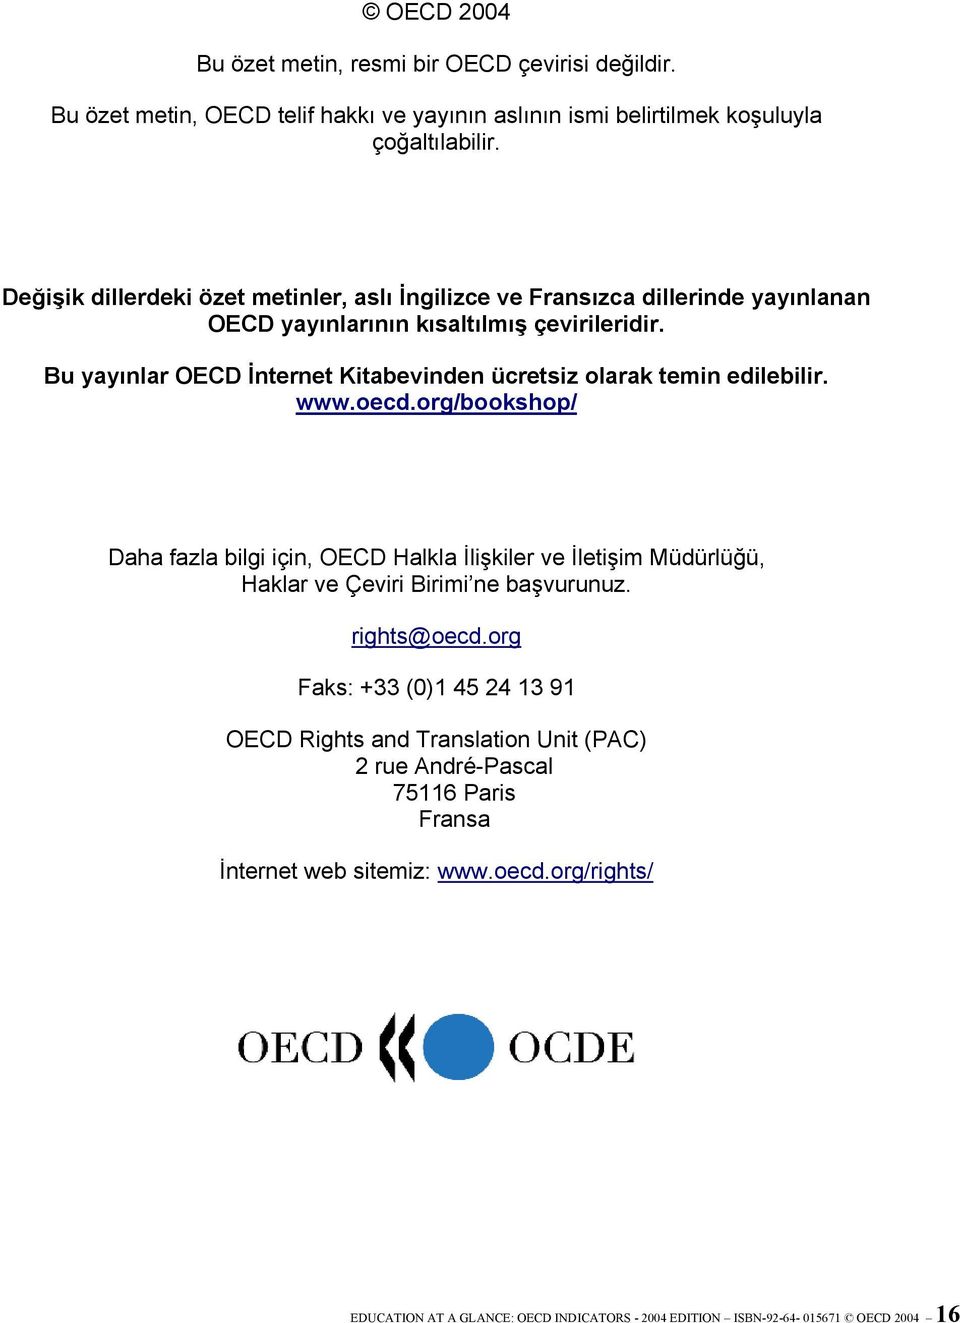 Bu yayınlar OECD İnternet Kitabevinden ücretsiz olarak temin edilebilir. www.oecd.